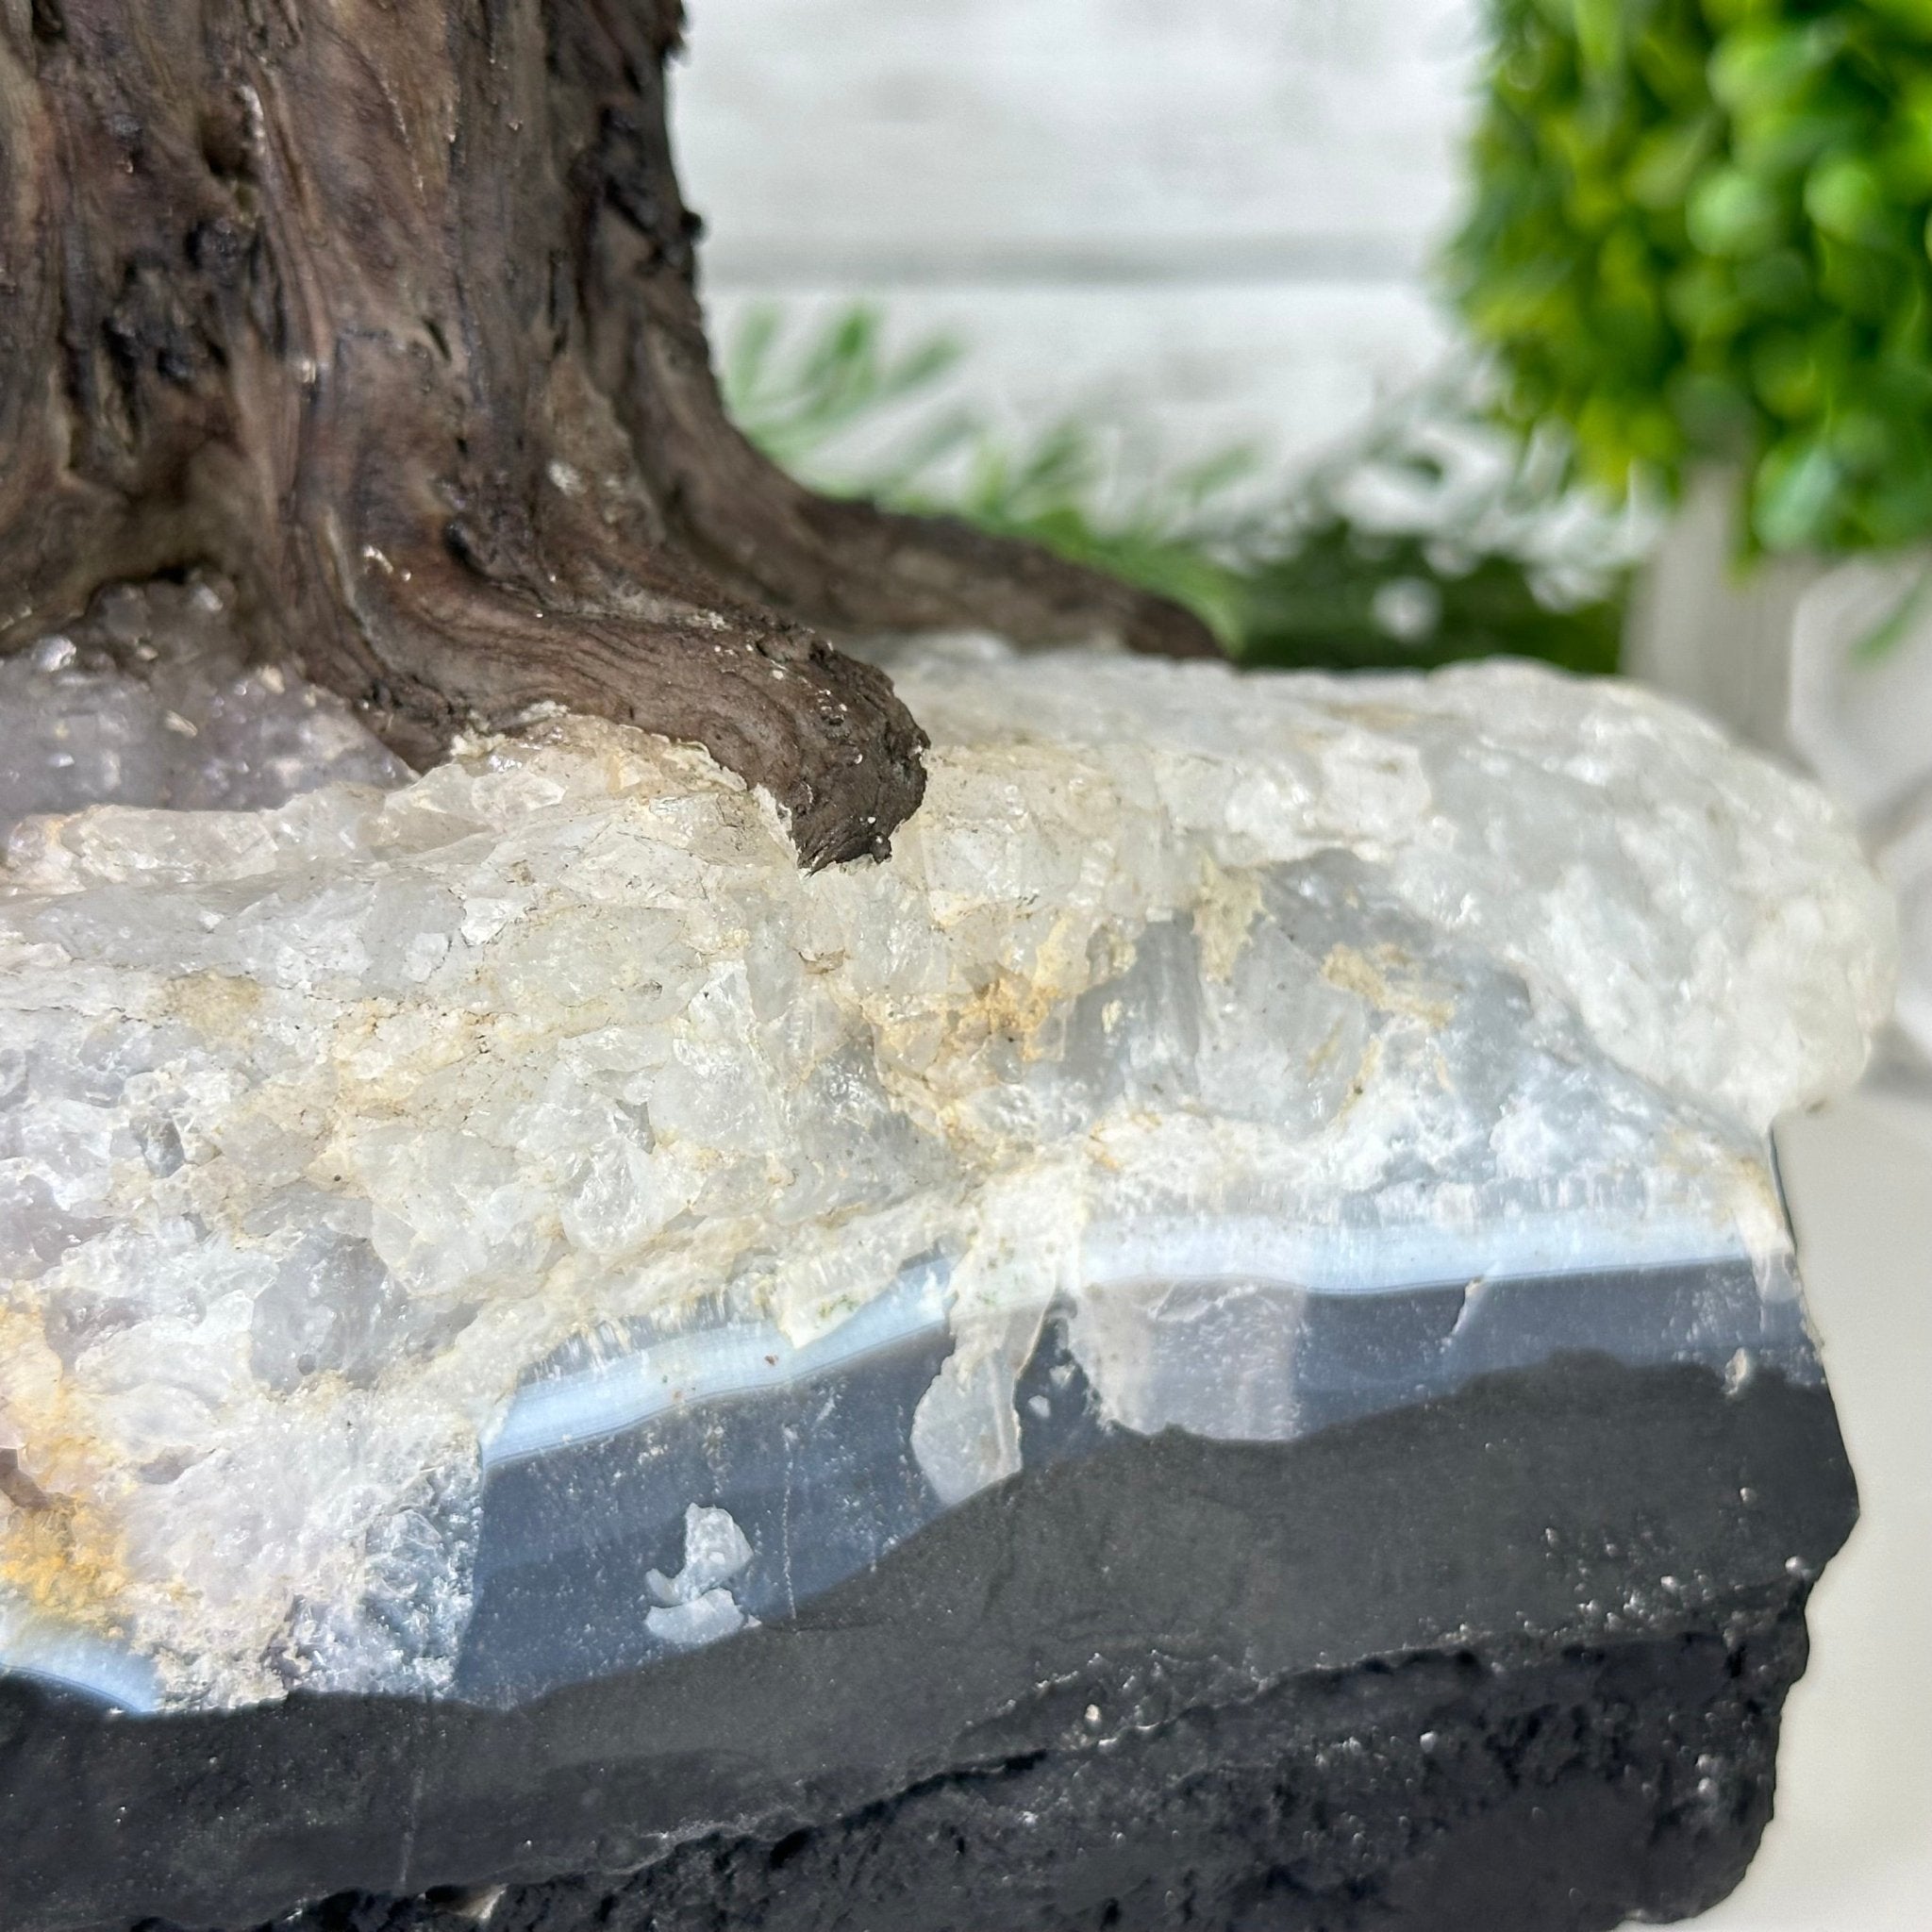 22" Tall Amethyst Gemstone Tree on an Amethyst base, 540 gems #5406AM-043 - Brazil GemsBrazil Gems22" Tall Amethyst Gemstone Tree on an Amethyst base, 540 gems #5406AM-043Gemstone Trees5406AM-043